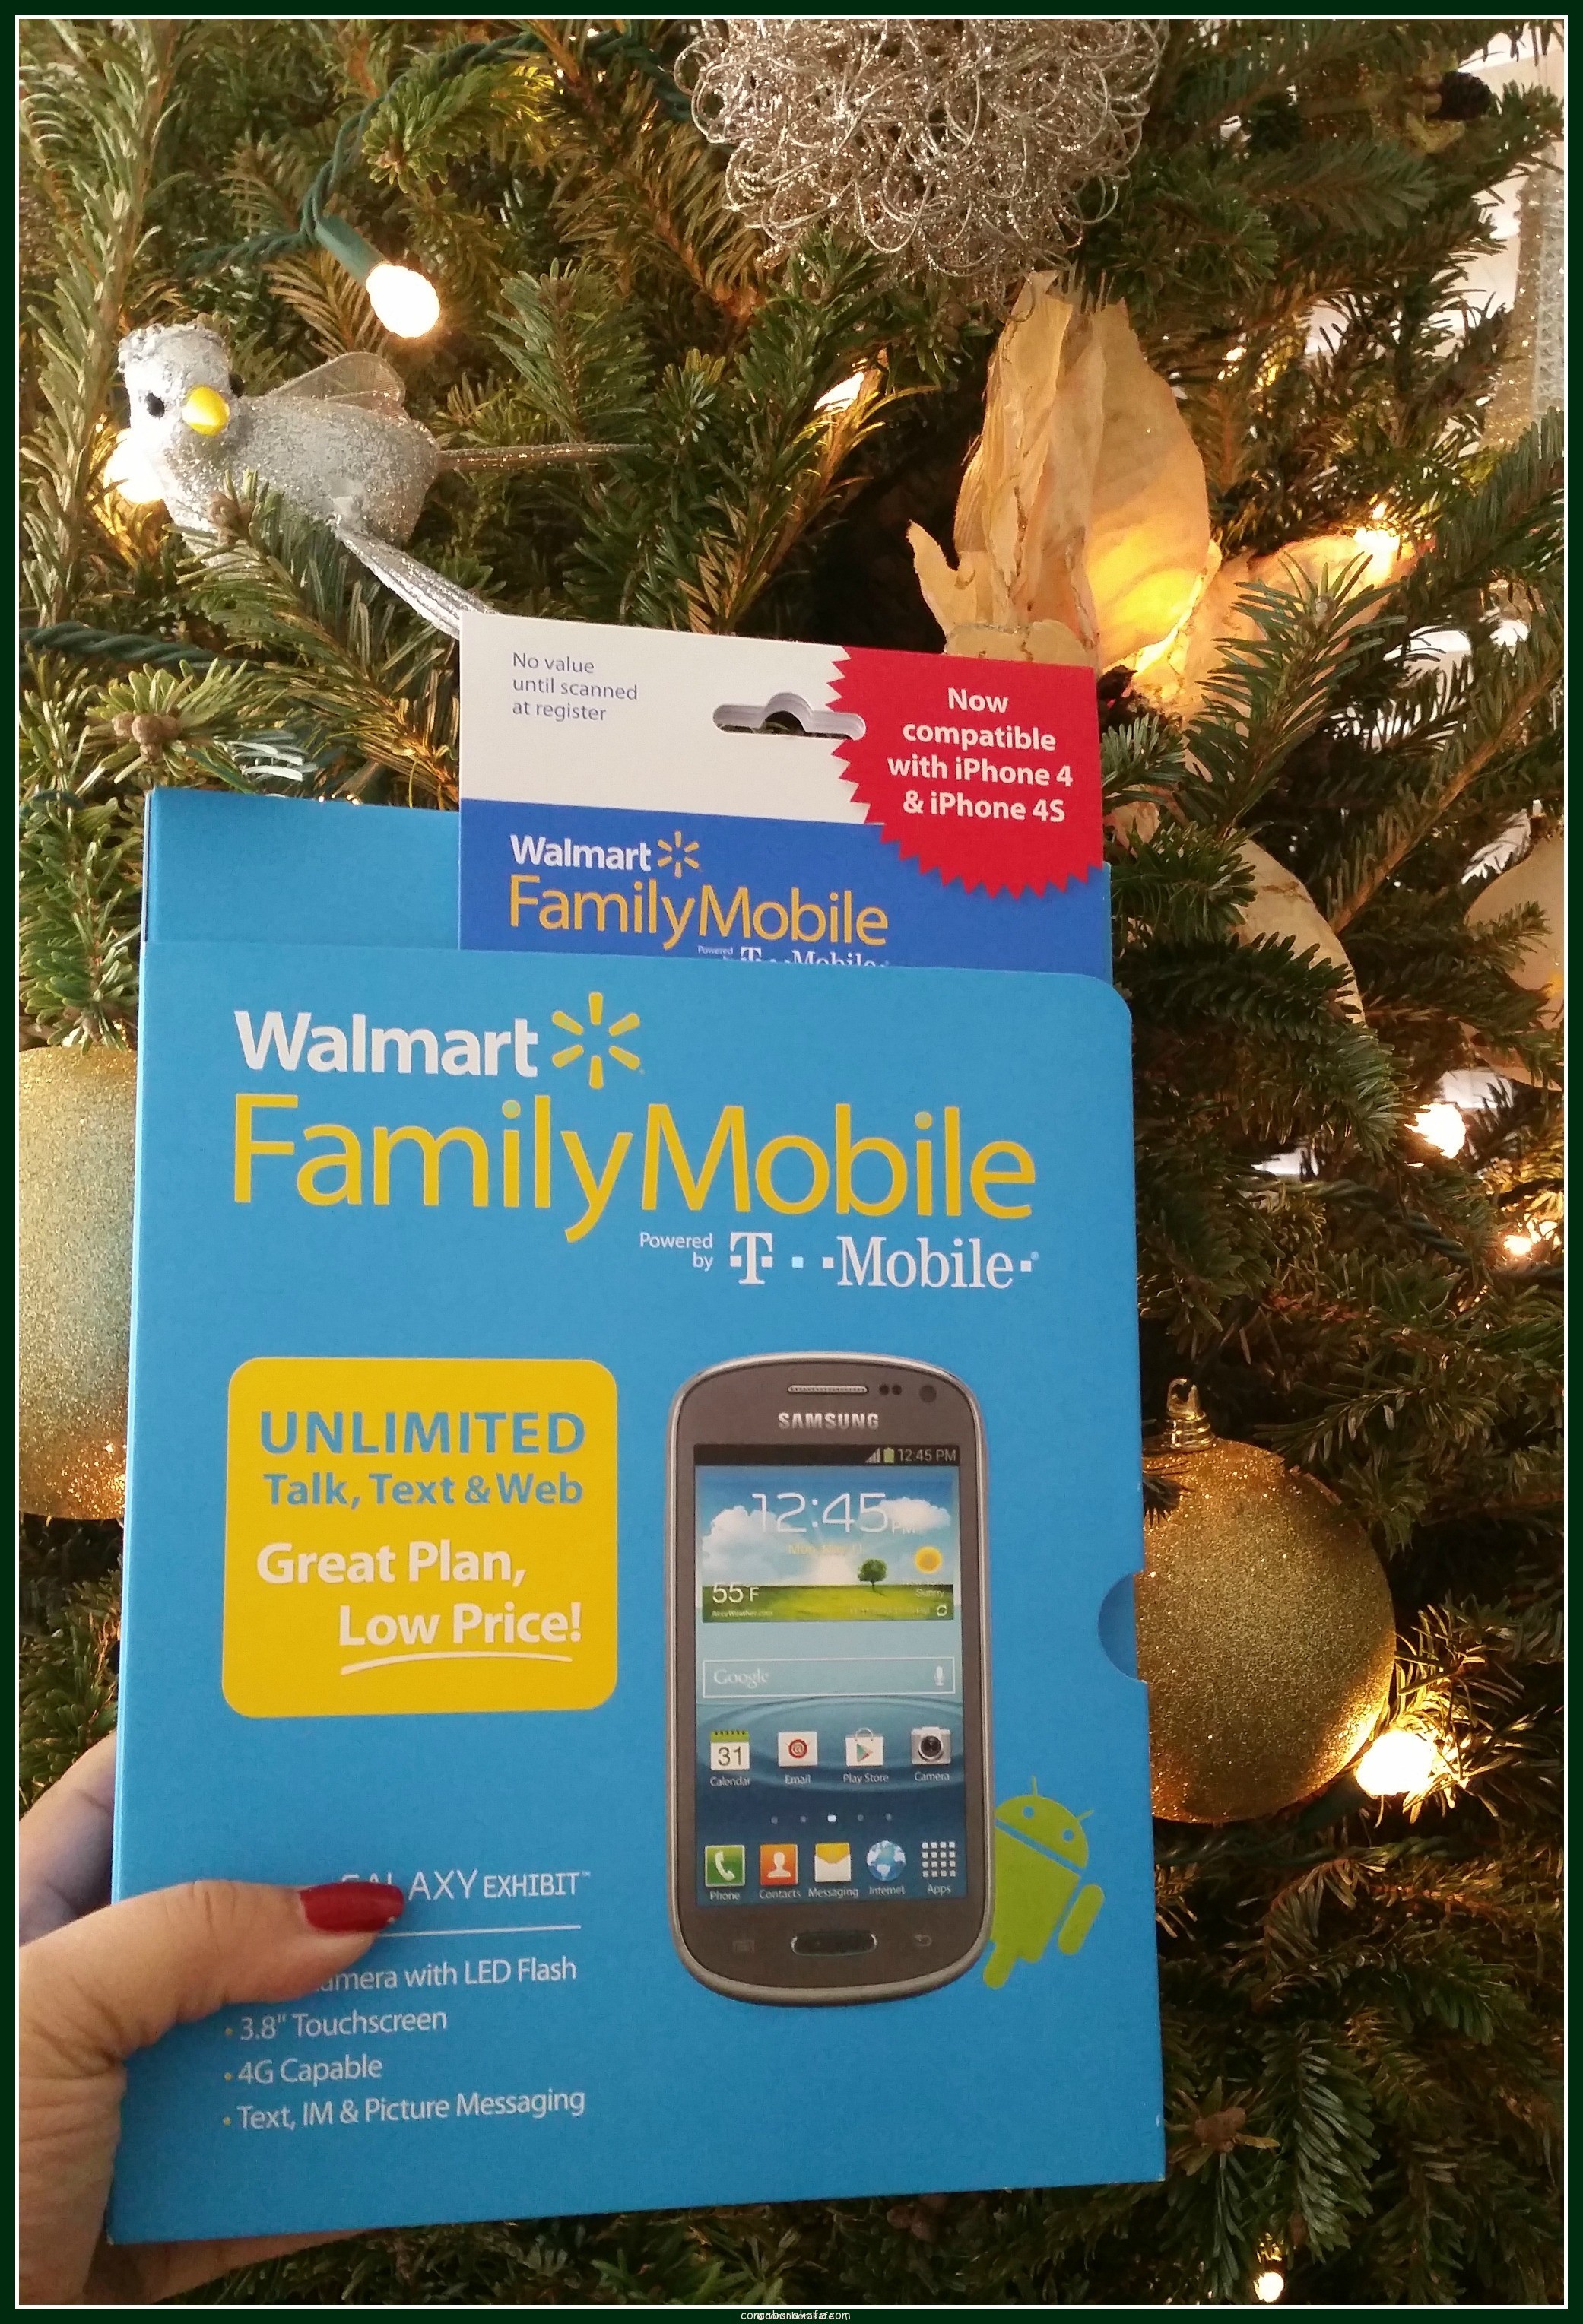 Los planes ilimitados de Walmart Family Mobile es el regalo perfecto en esta Navidad #HolidaysAreCalling #cbias #ad